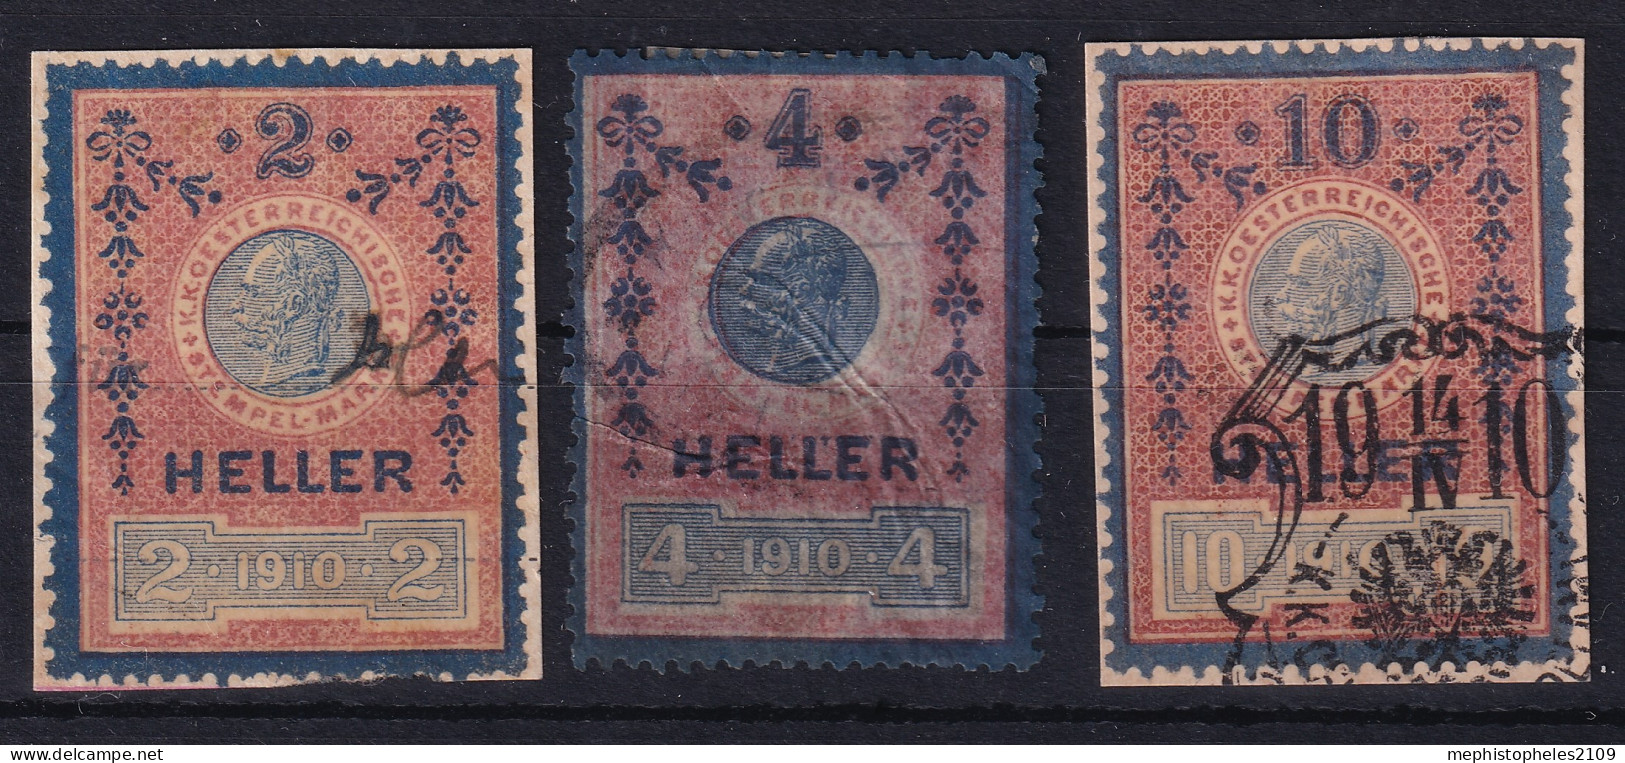 AUSTRIA 1910 - Canceled - Stempelmarken 2h, 4h, 10h - Steuermarken